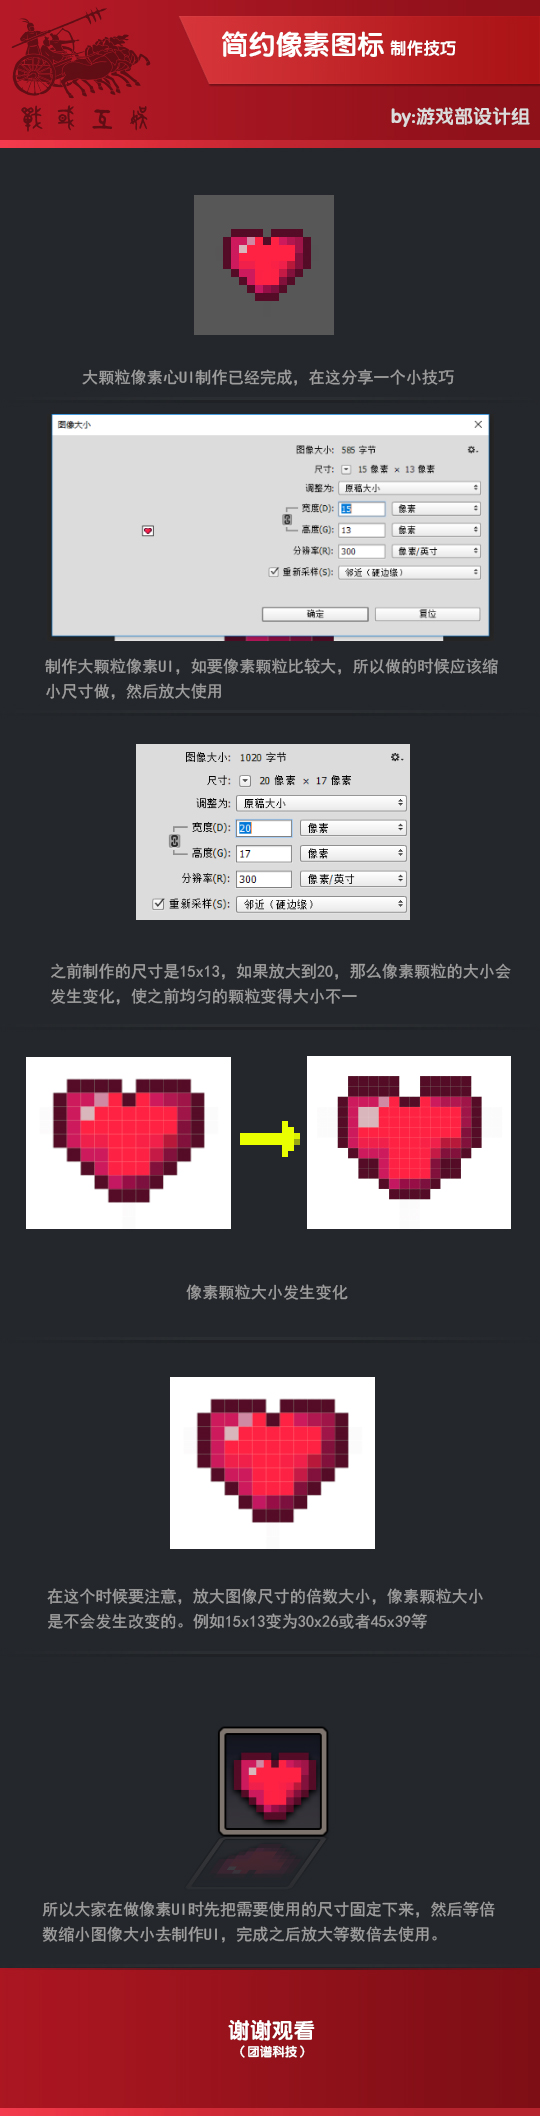 王琪-像素UI设计.jpg